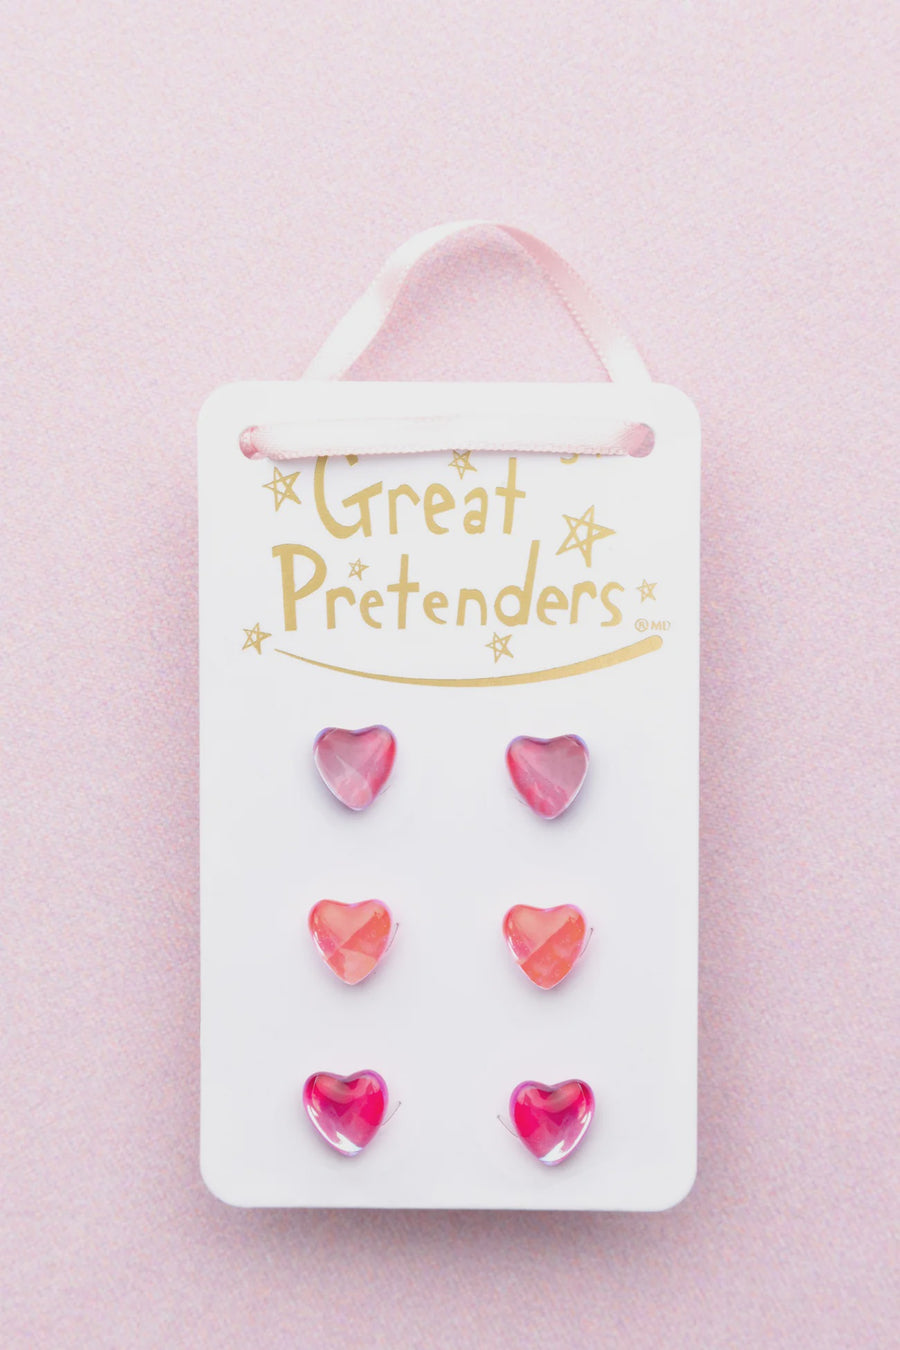 Great Pretenders - Holo Heart Stud Earring Set